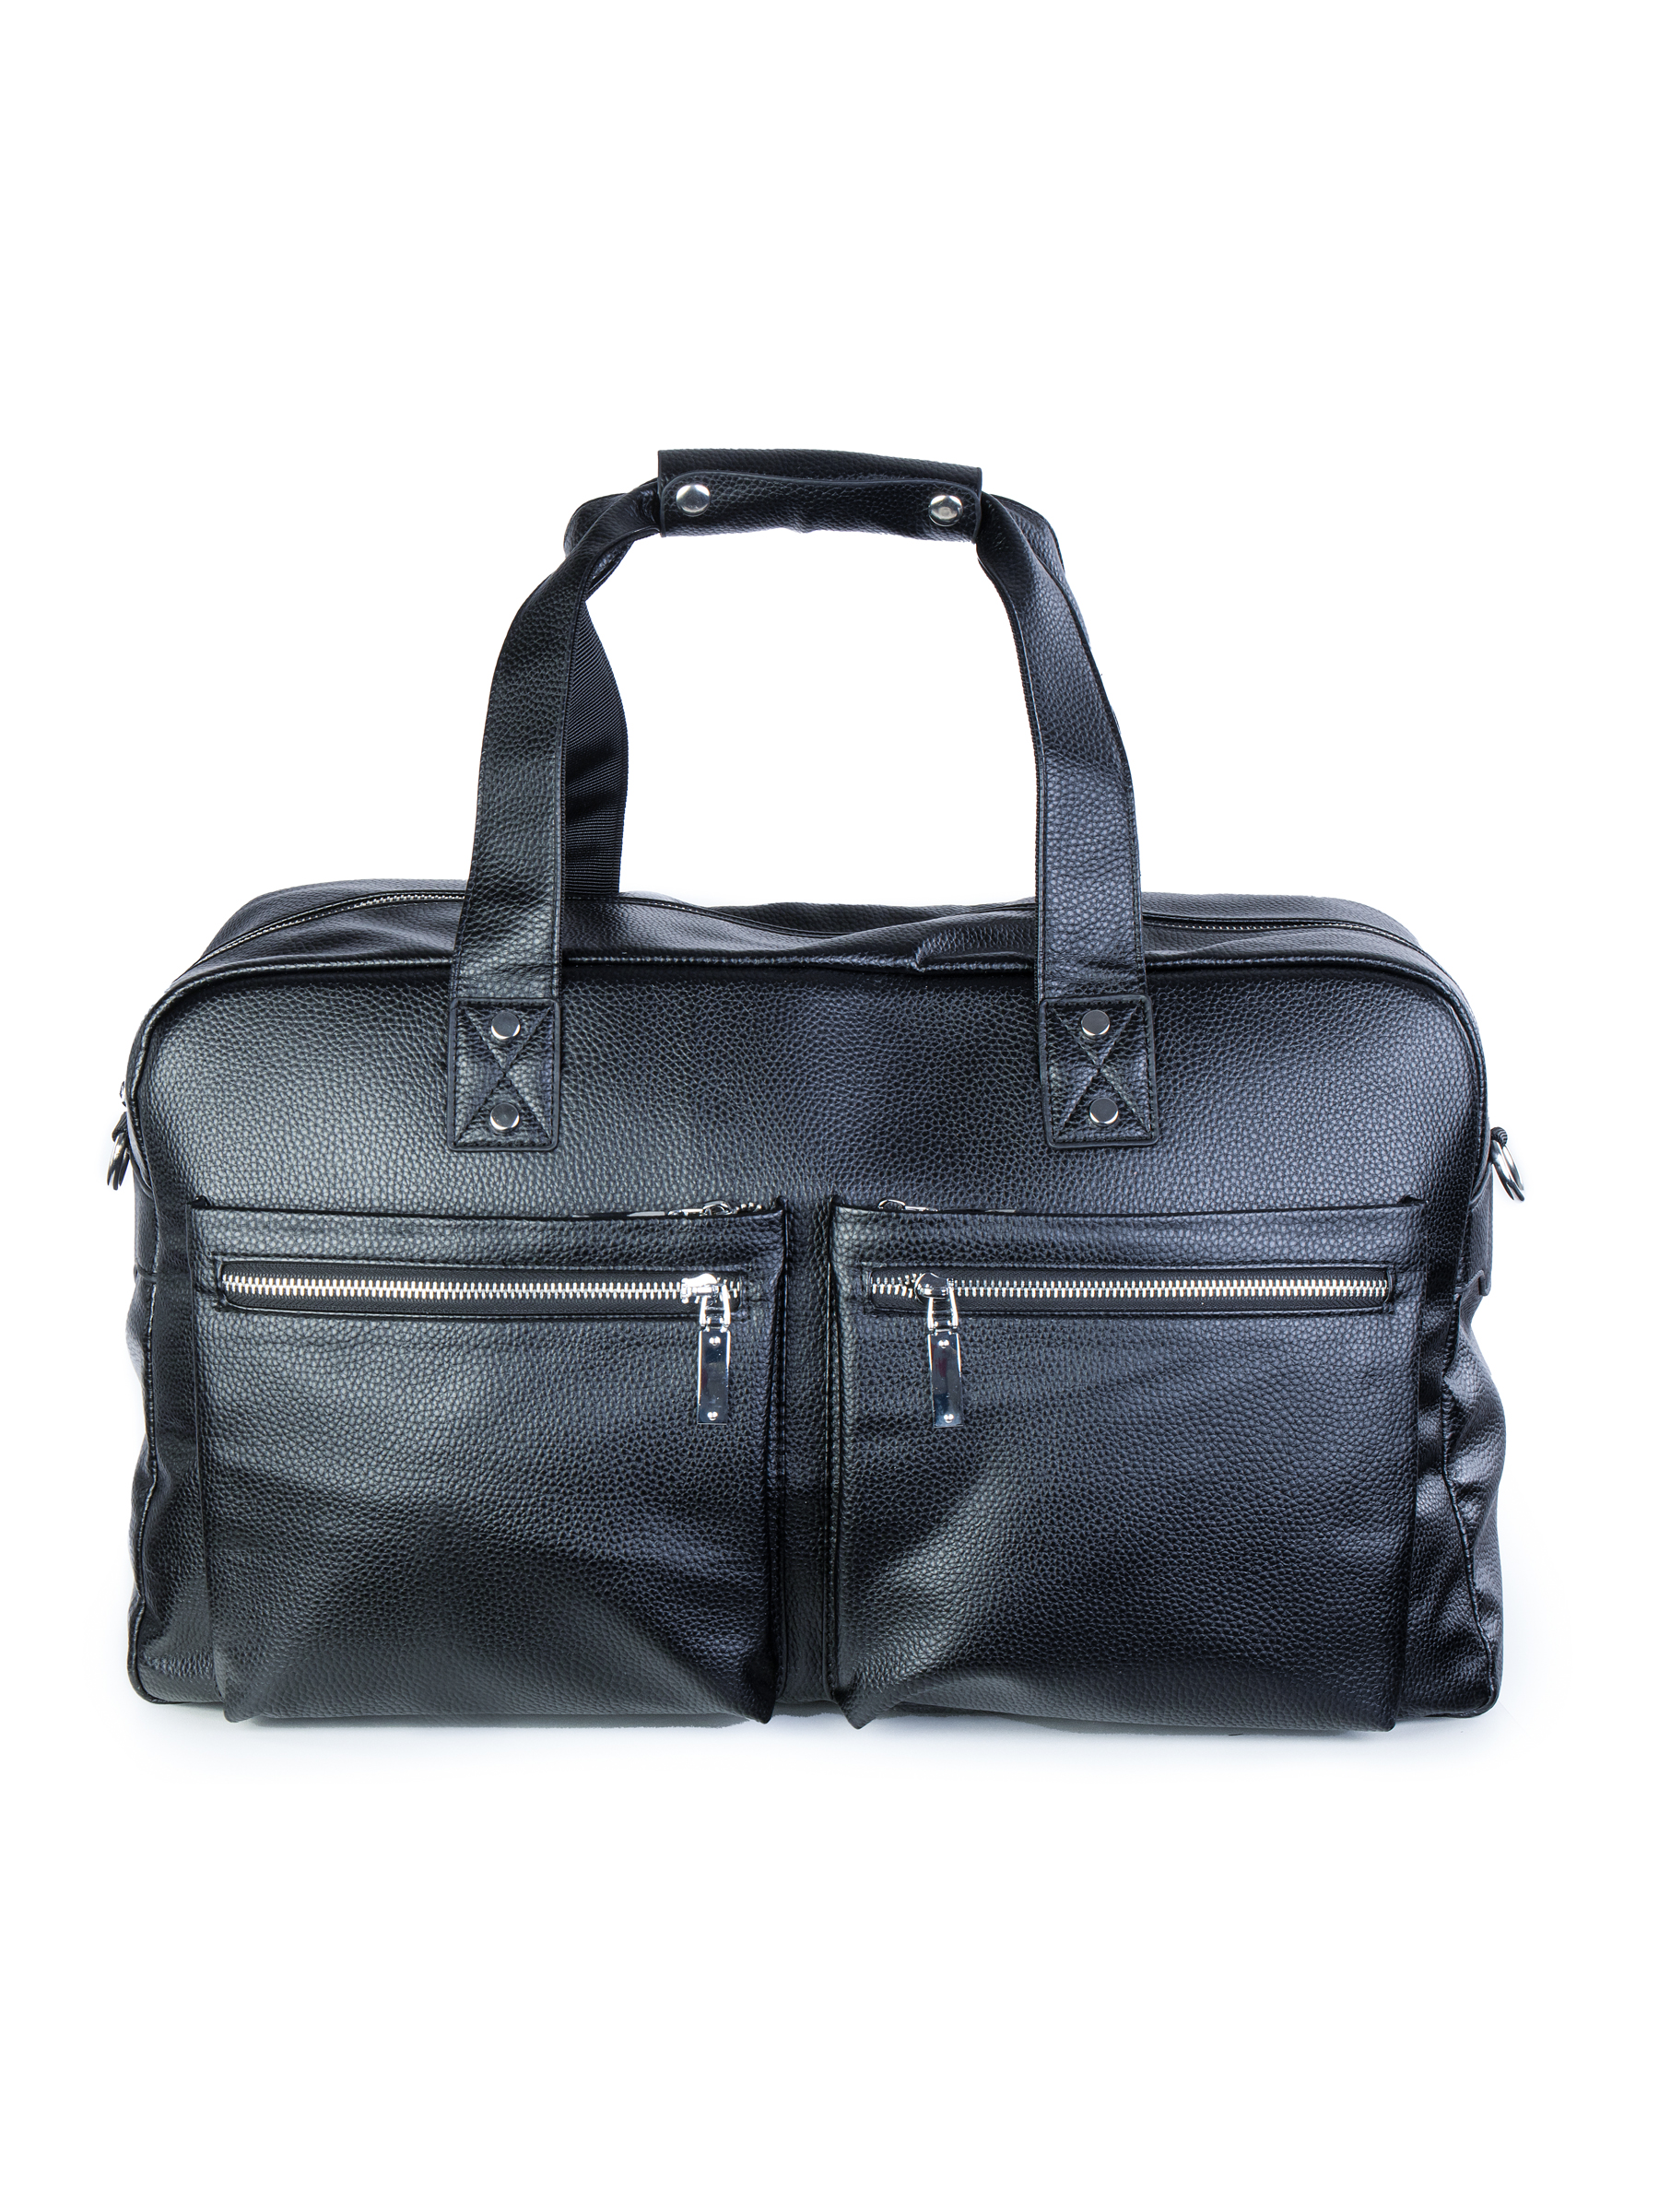 Дорожная сумка унисекс AV Bags Bag09 черная, 50х28х20 см